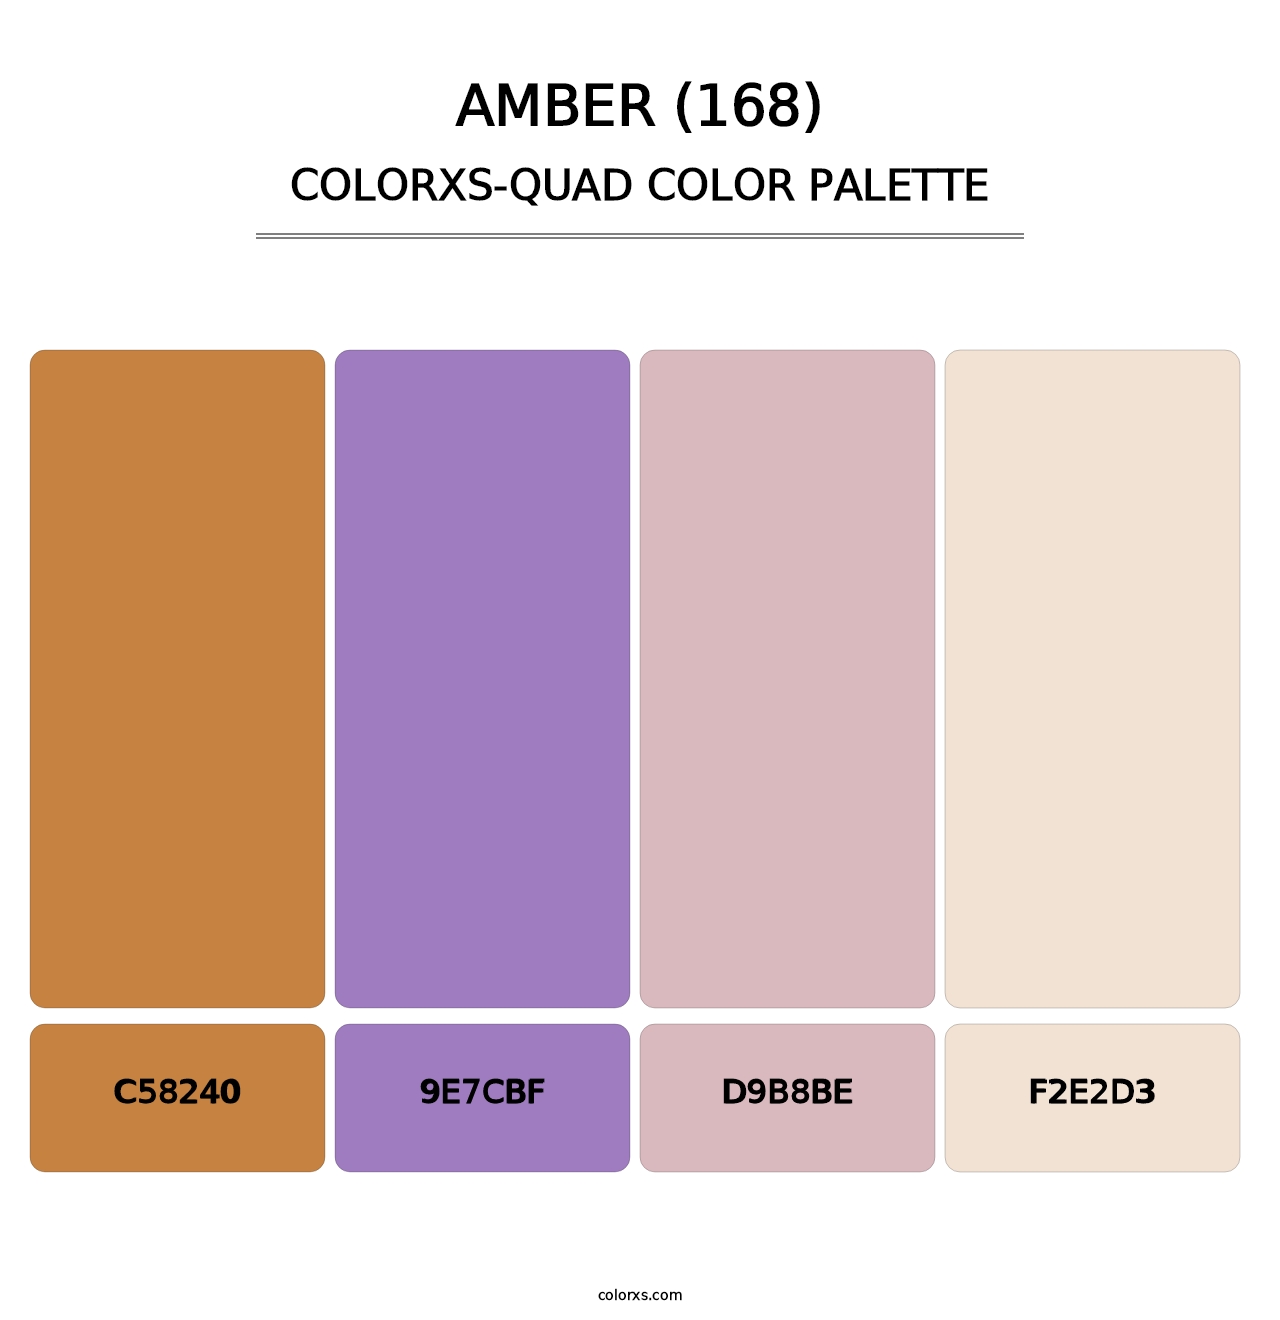 Amber (168) - Colorxs Quad Palette